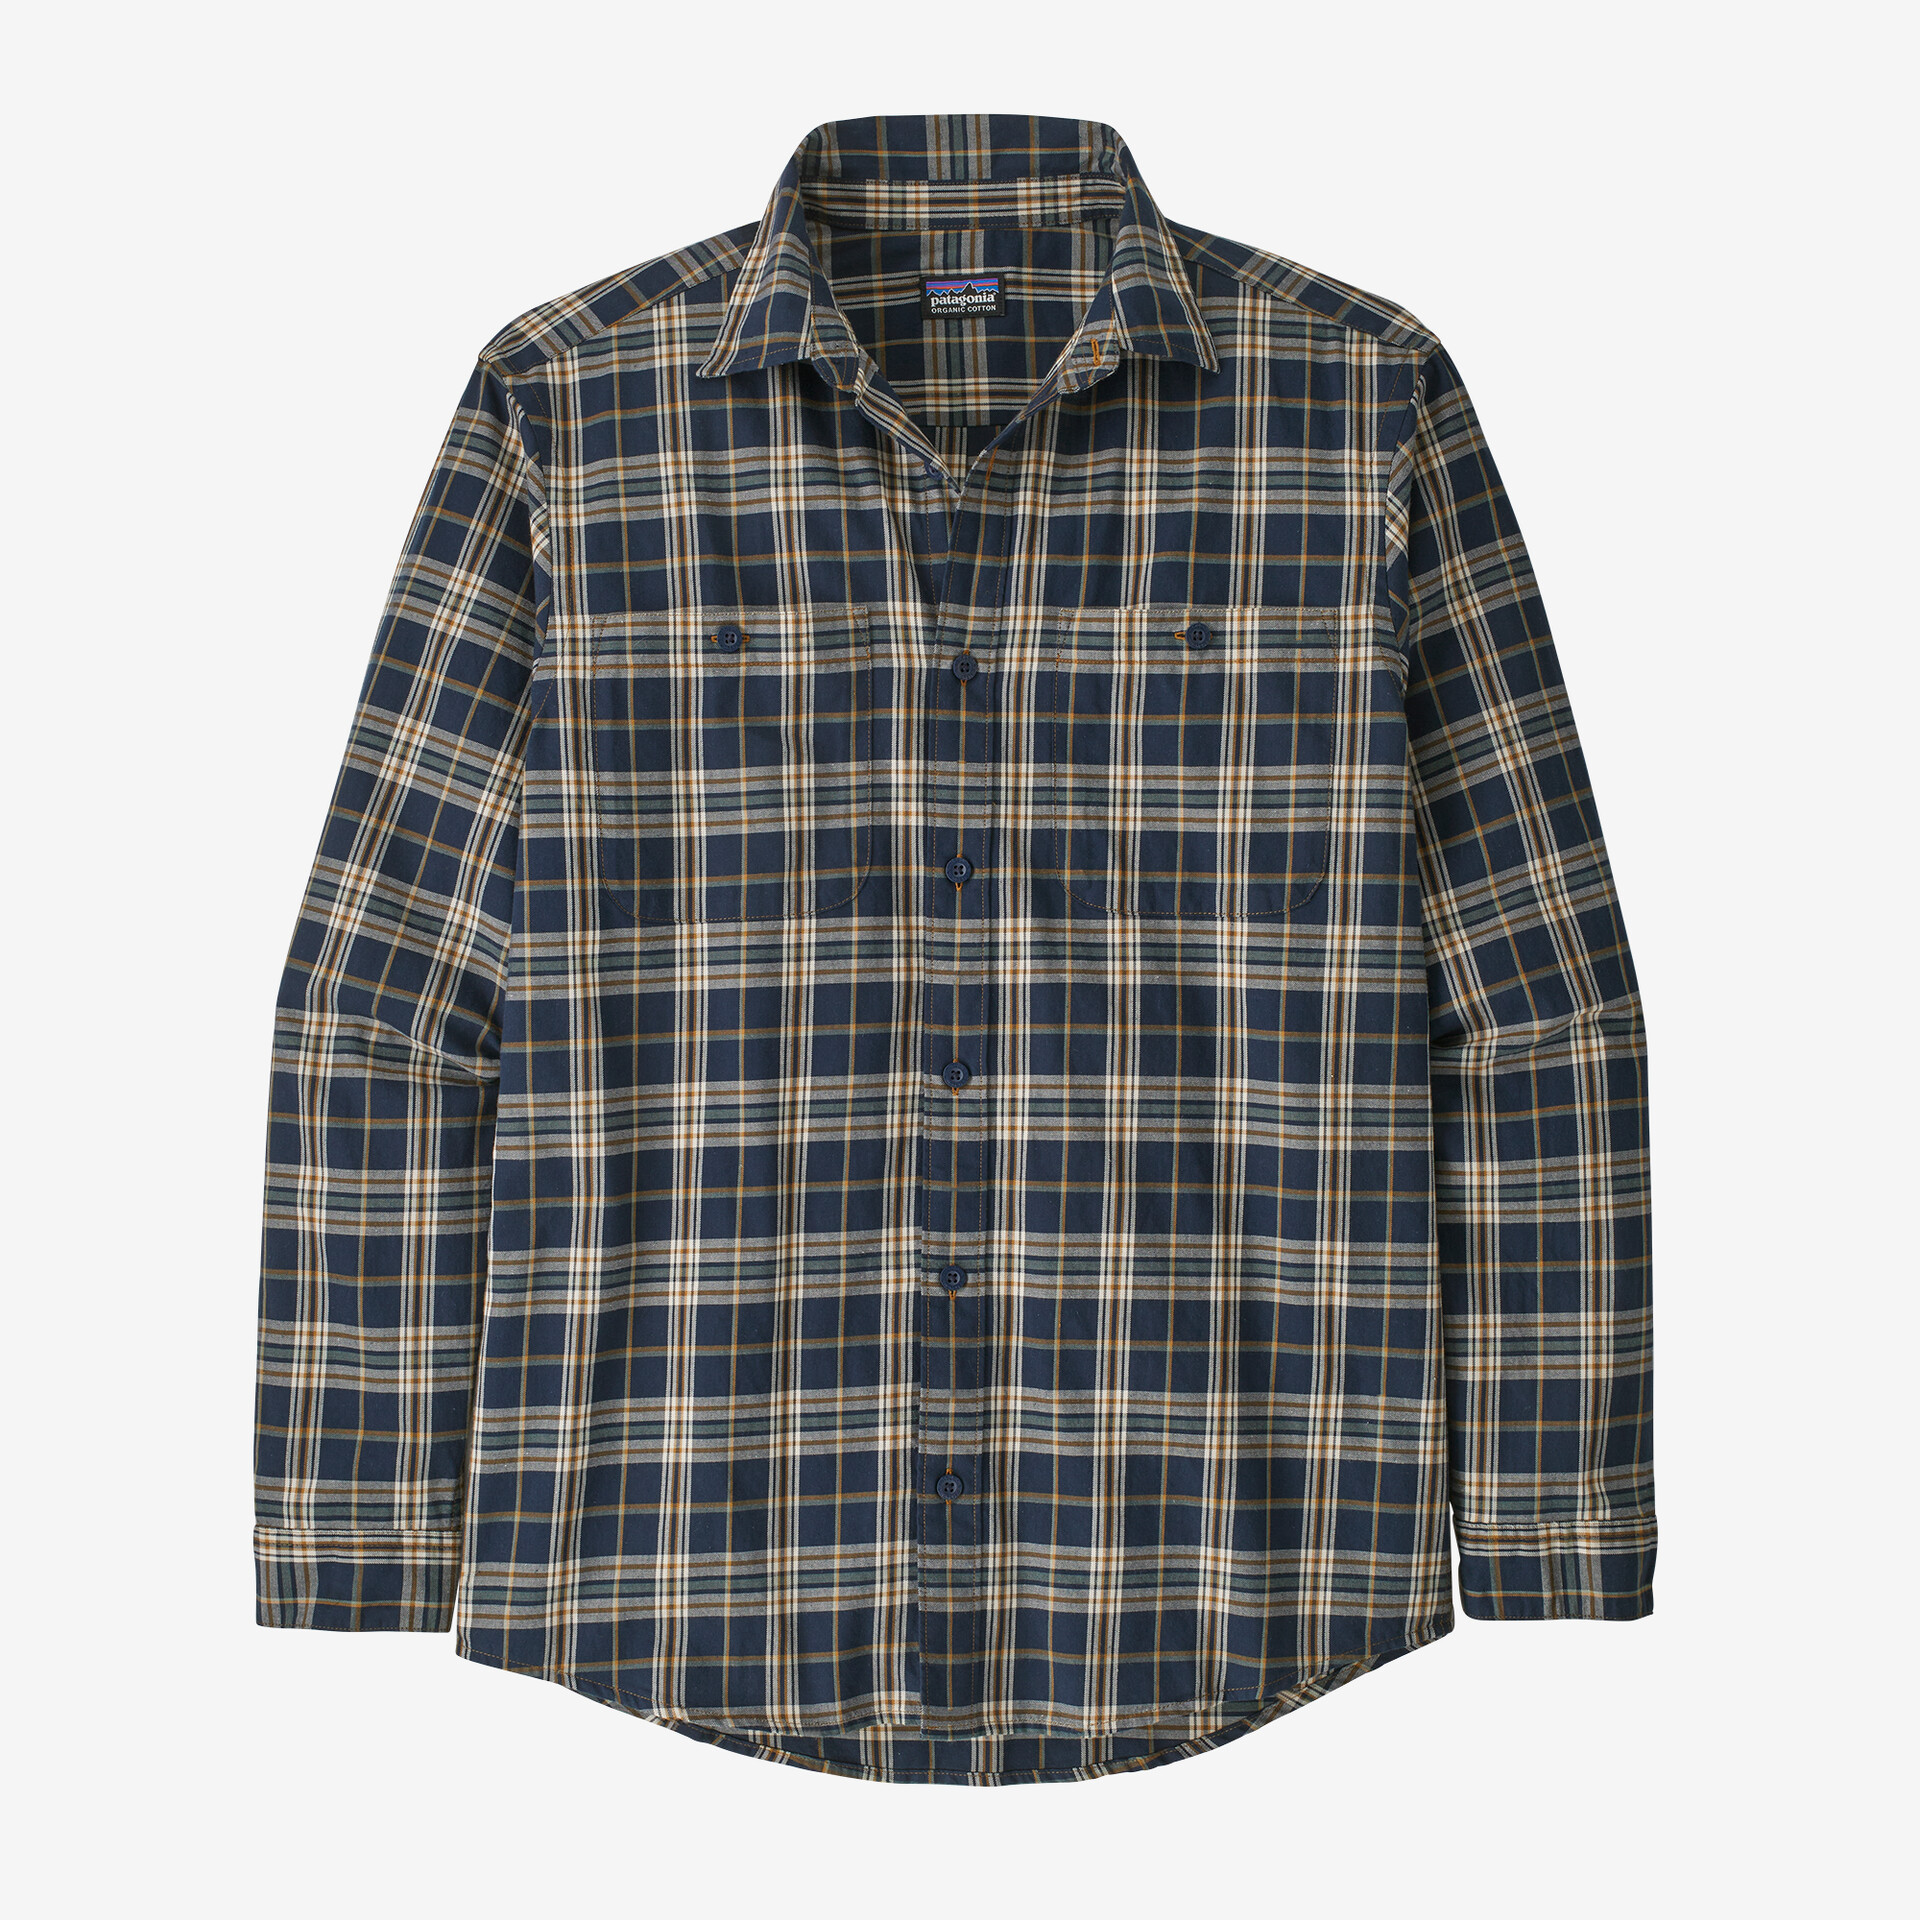 цена Мужская рубашка из хлопка пима с длинными рукавами Patagonia, цвет Channels: New Navy